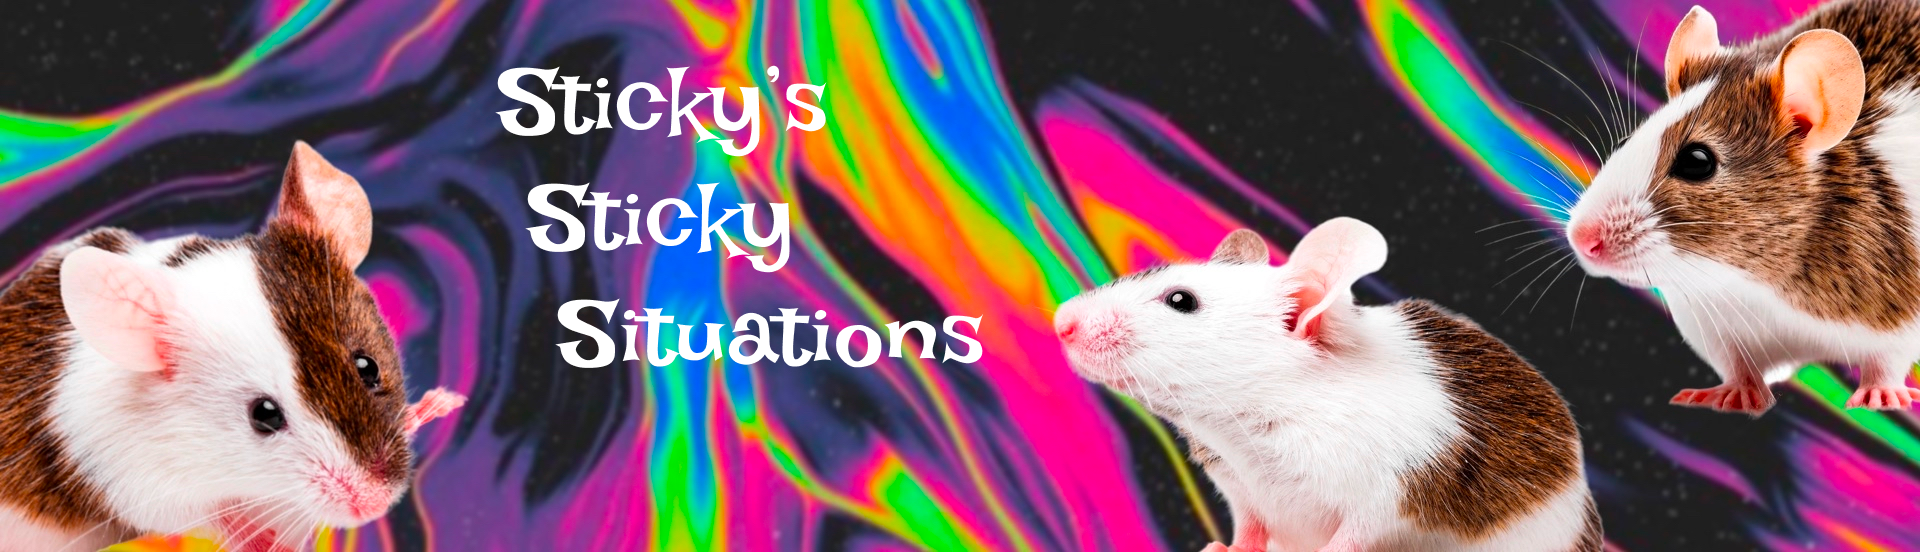 Sticky's Sticky Situations